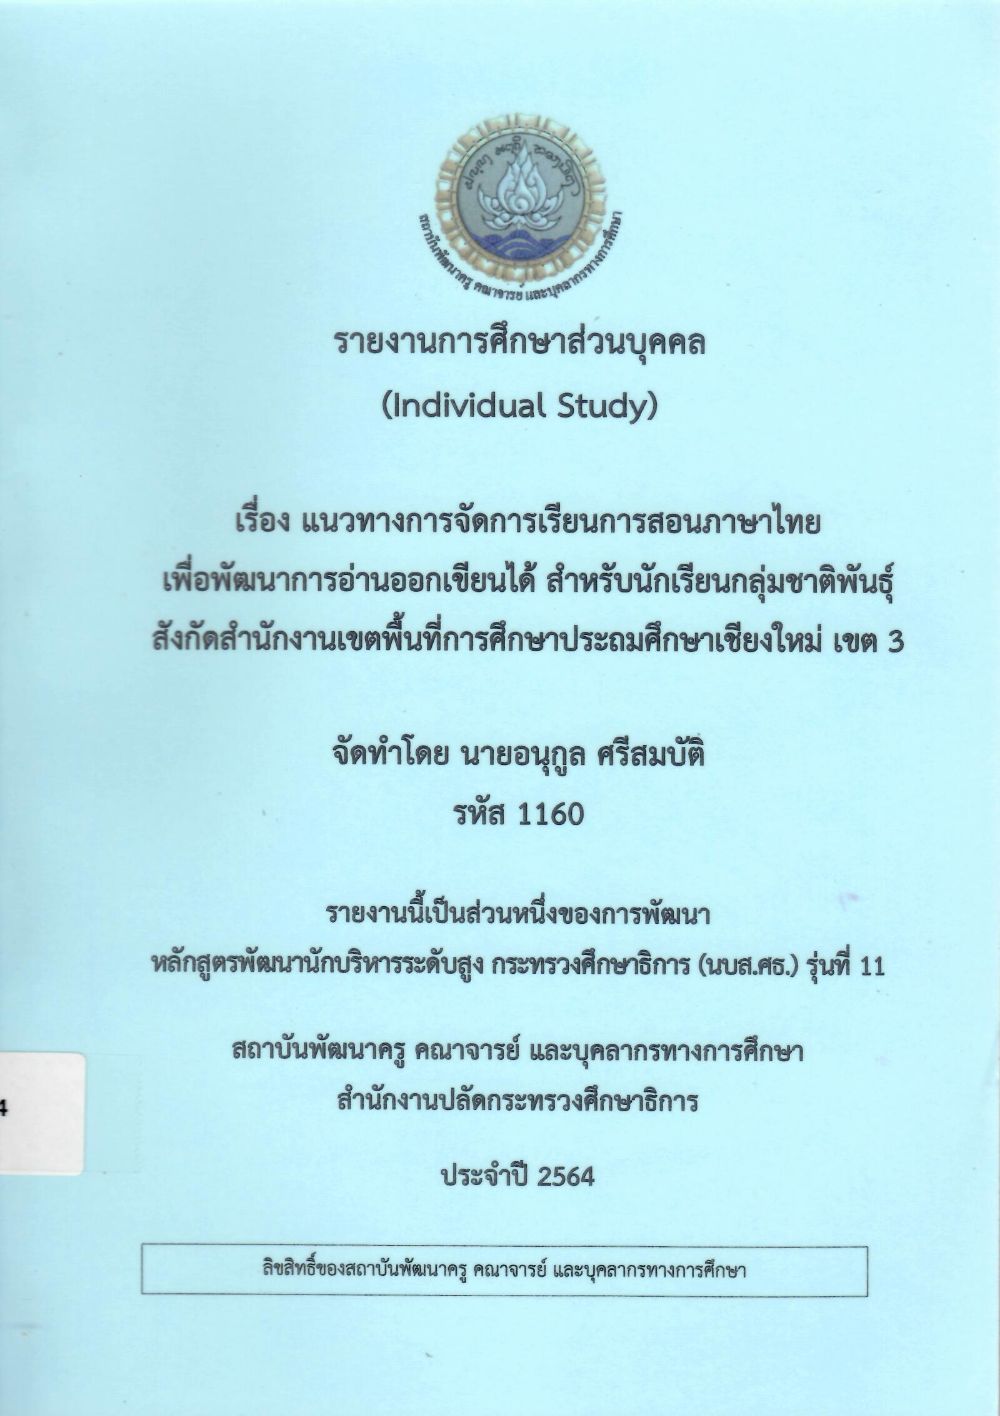 แนวทางการจัดการเรียนการสอนภาษาไทยเพื่อพัฒนาการอ่านออกเขียนได้ สำหรับนักเรียนกลุ่มชาติพันธุ์ สังกัดสำนักงานเขตพื้นที่การศึกษาประถมศึกษาเชียงใหม่ เขต 3 : รายงานการศึกษาส่วนบุคคล (Individual Study)/ อนุกูล  ศรีสมบัติ